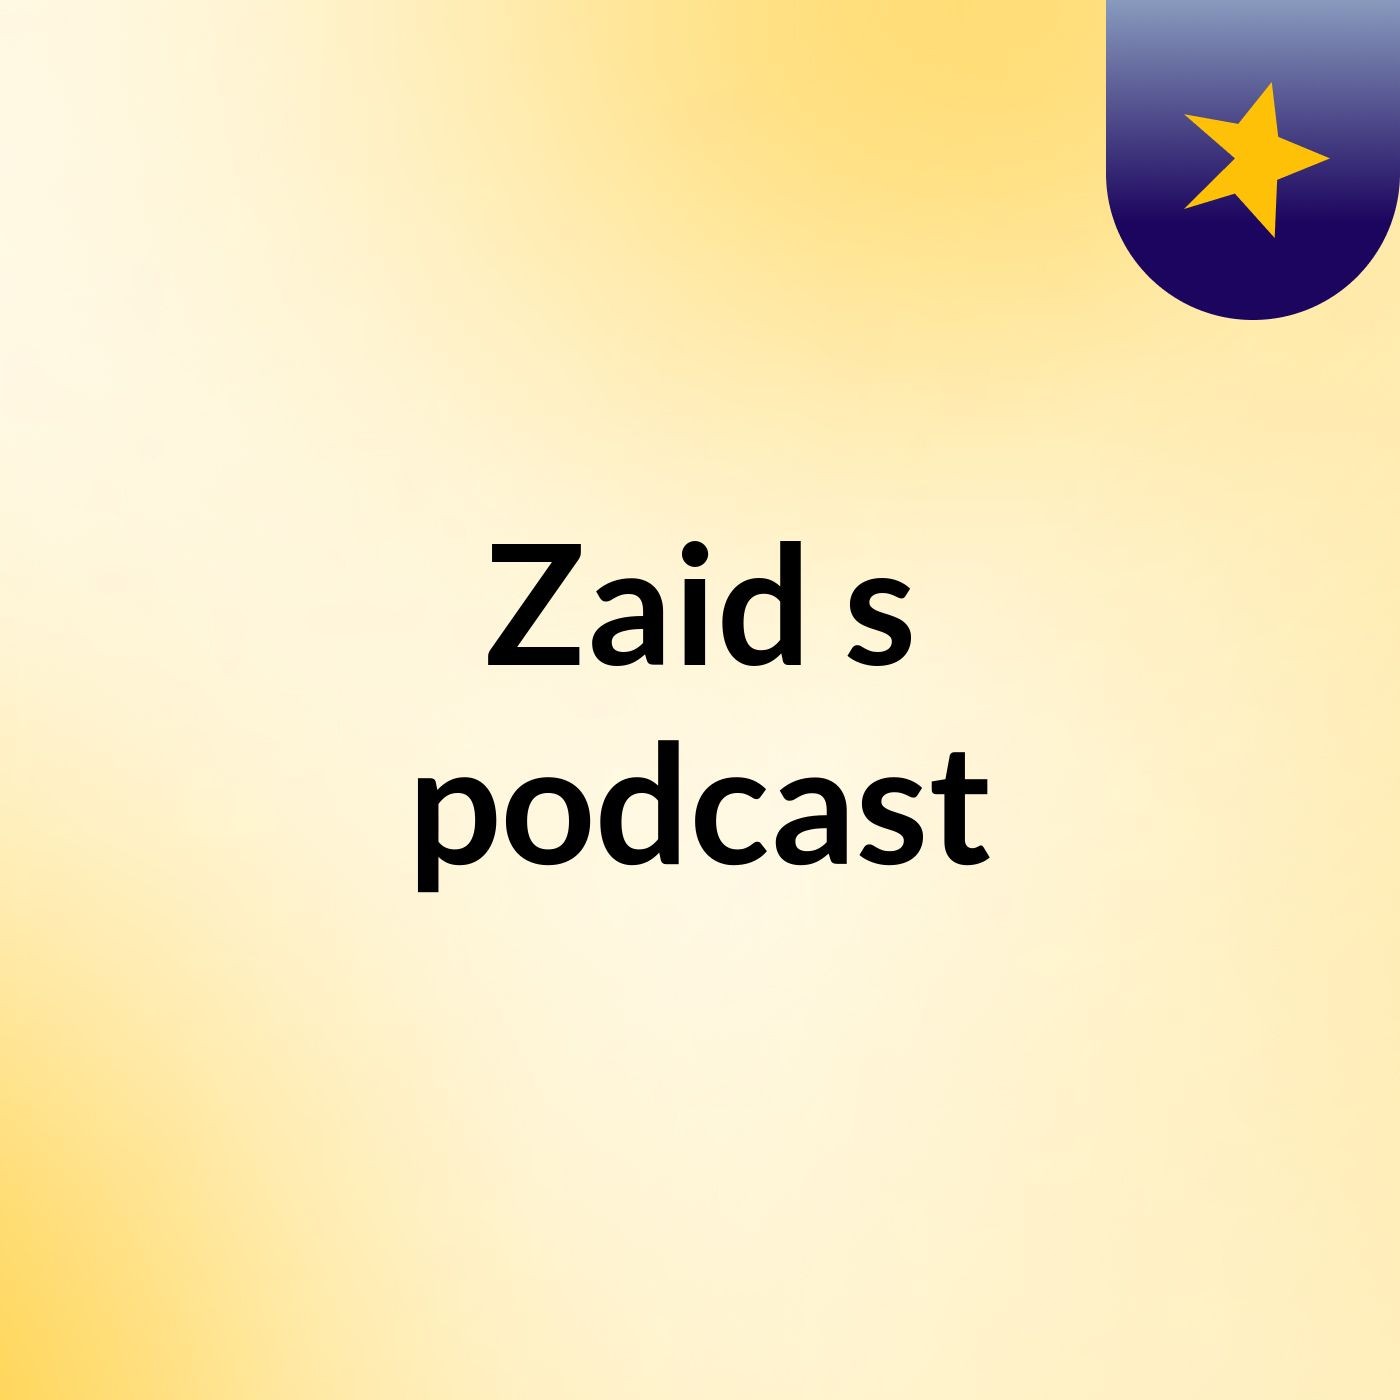 Zaid's podcast